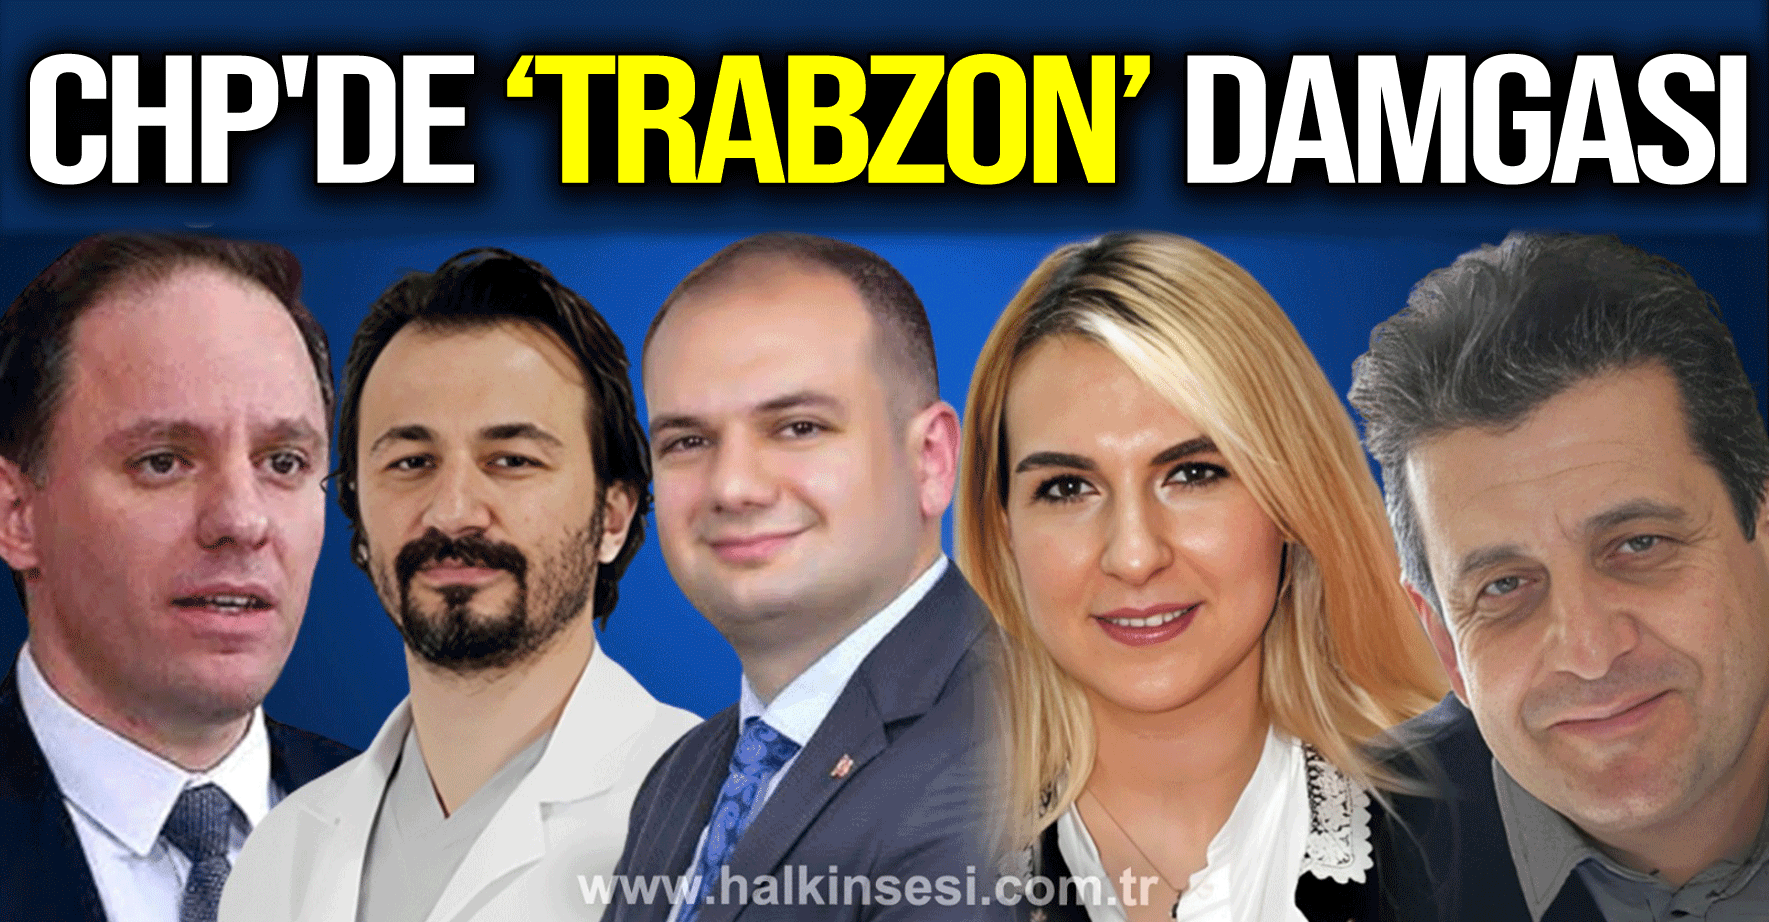 CHP ZONGULDAK LİSTESİNE 'TRABZON' DAMGASI!